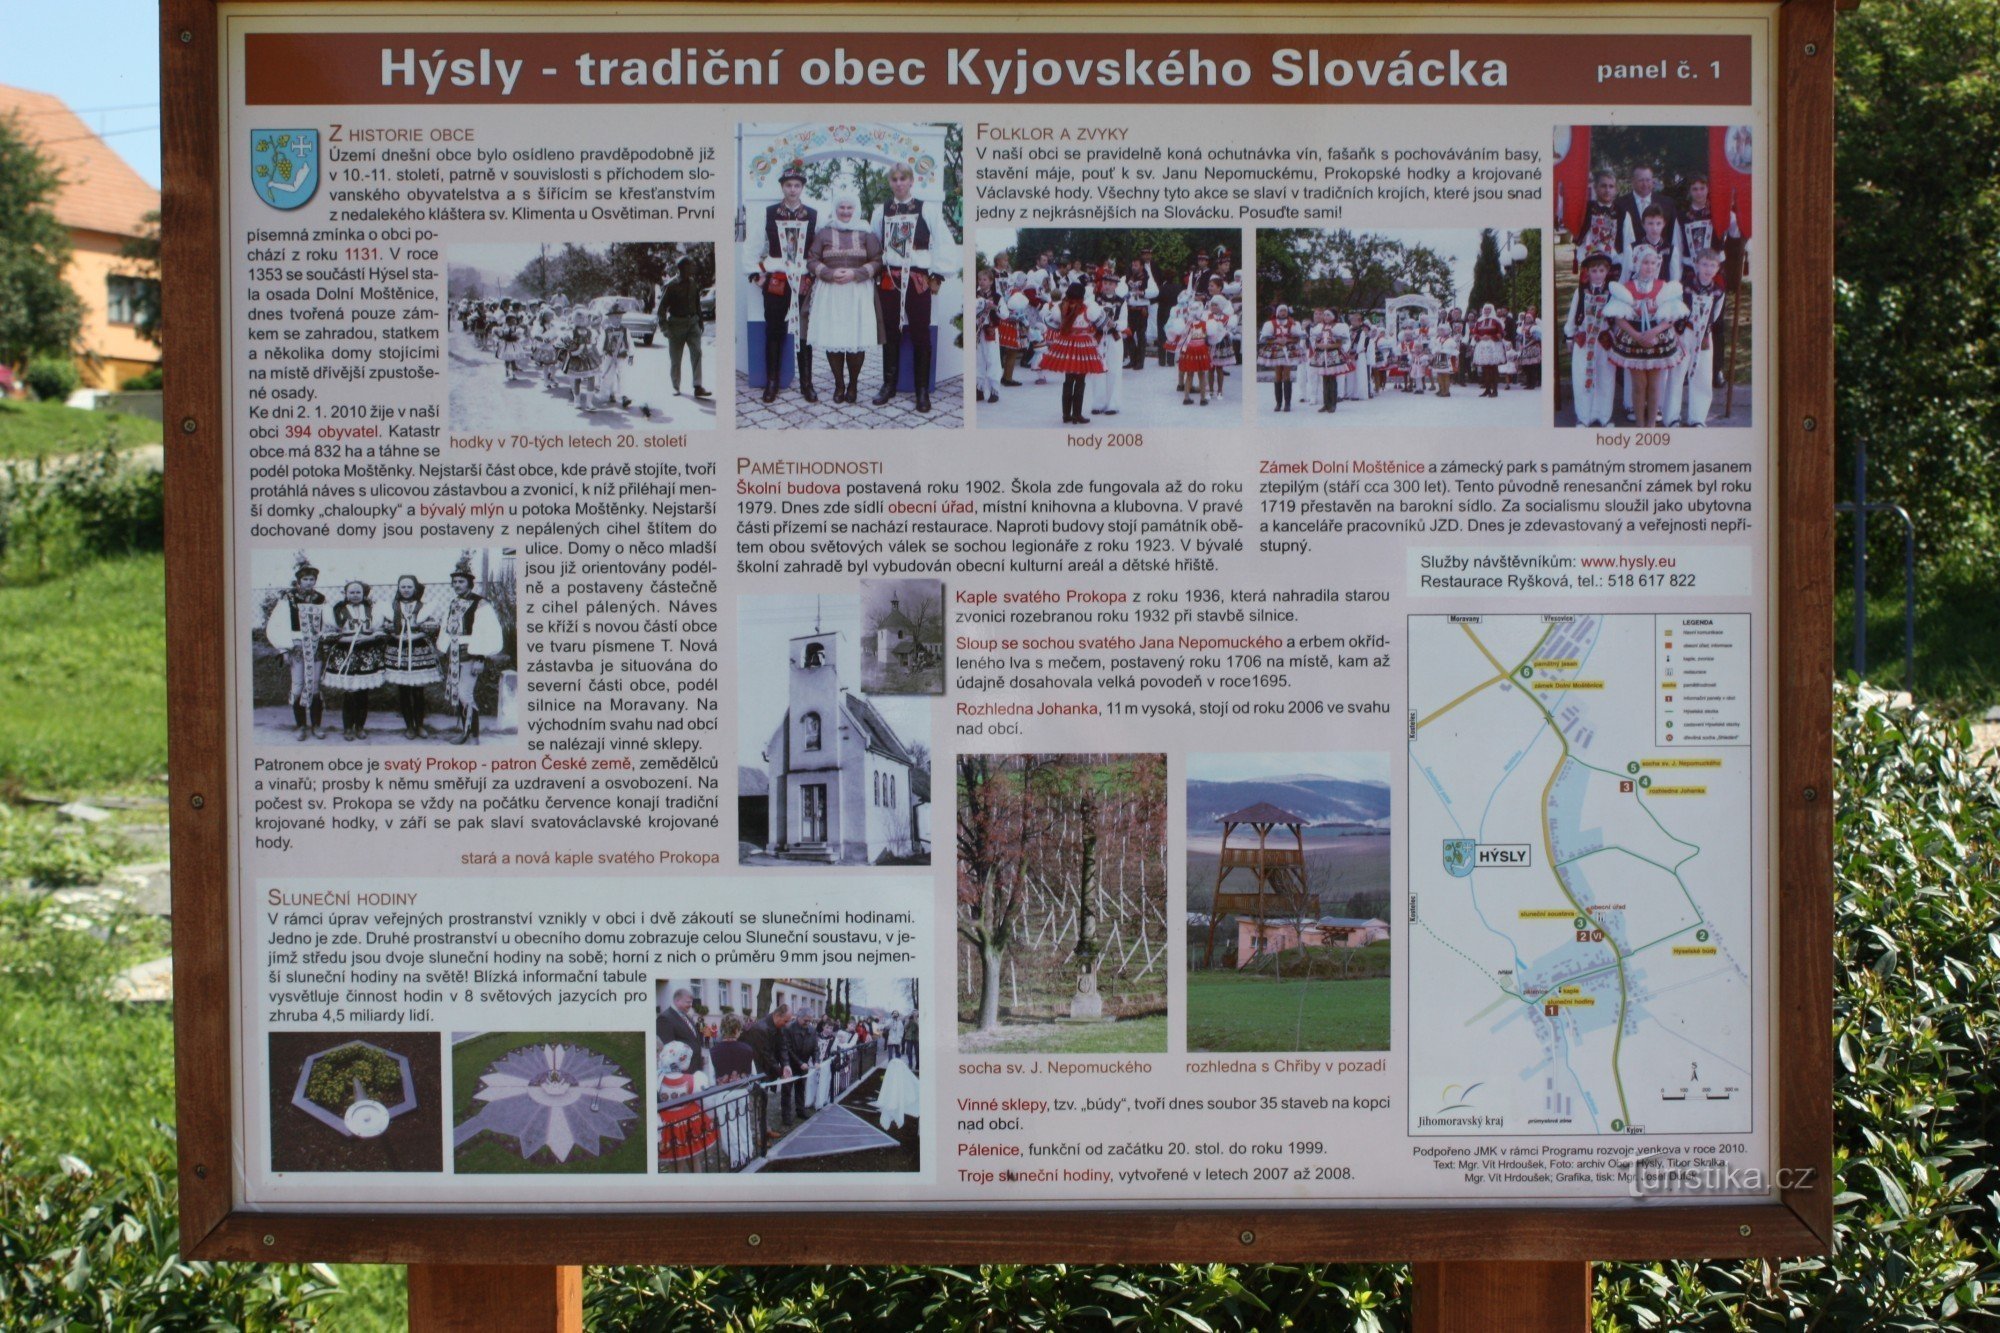 Hýsly, het toeristisch interessante dorp Slovácka